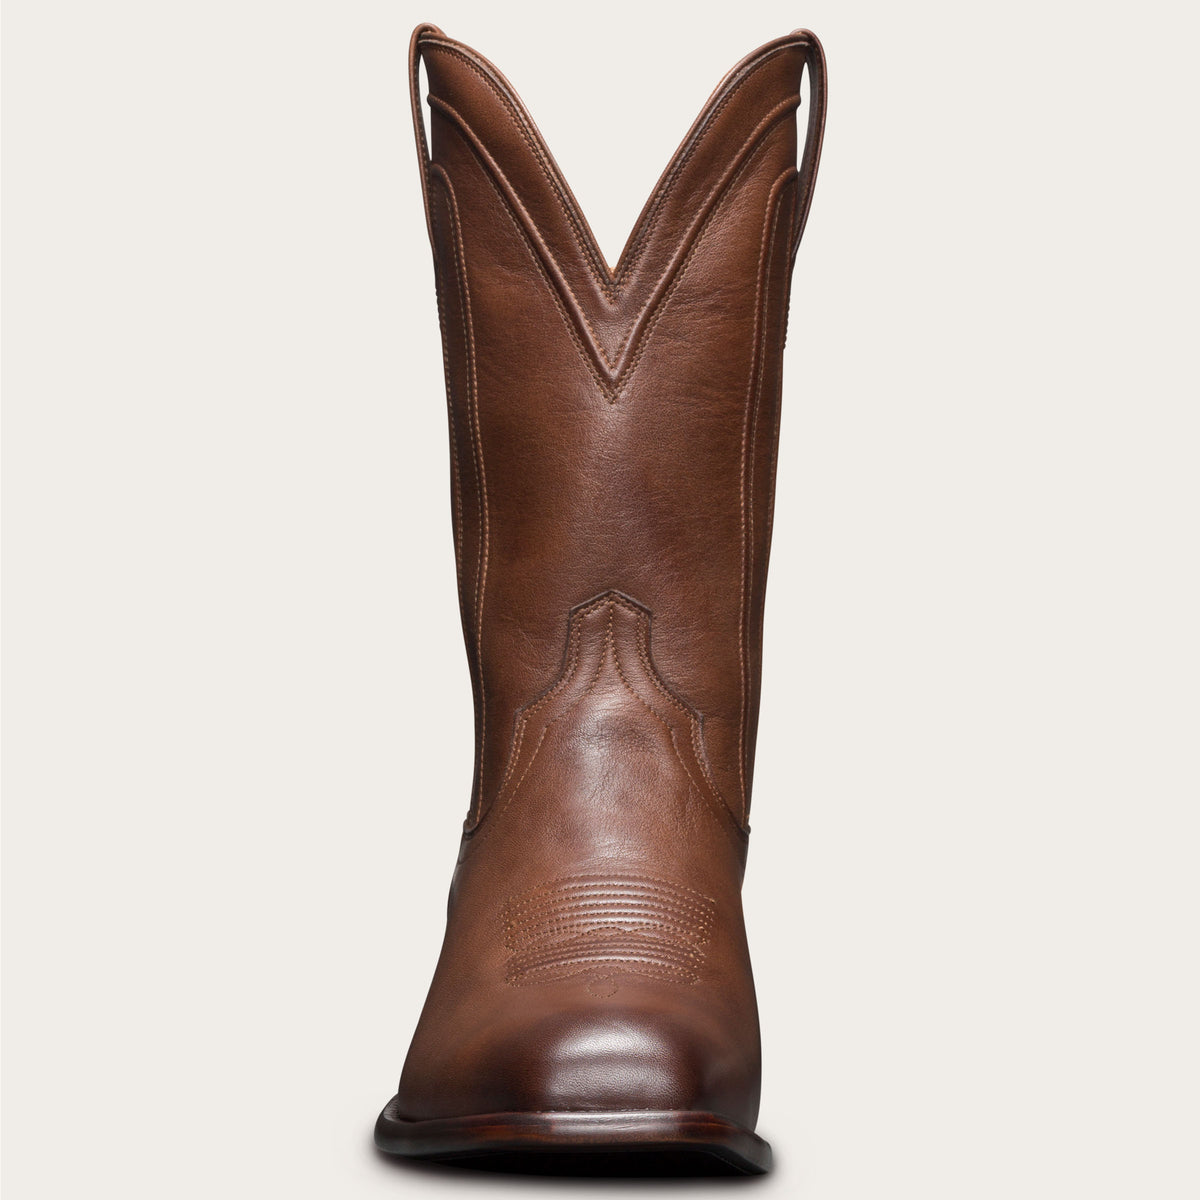 chisel toe cowboy boots